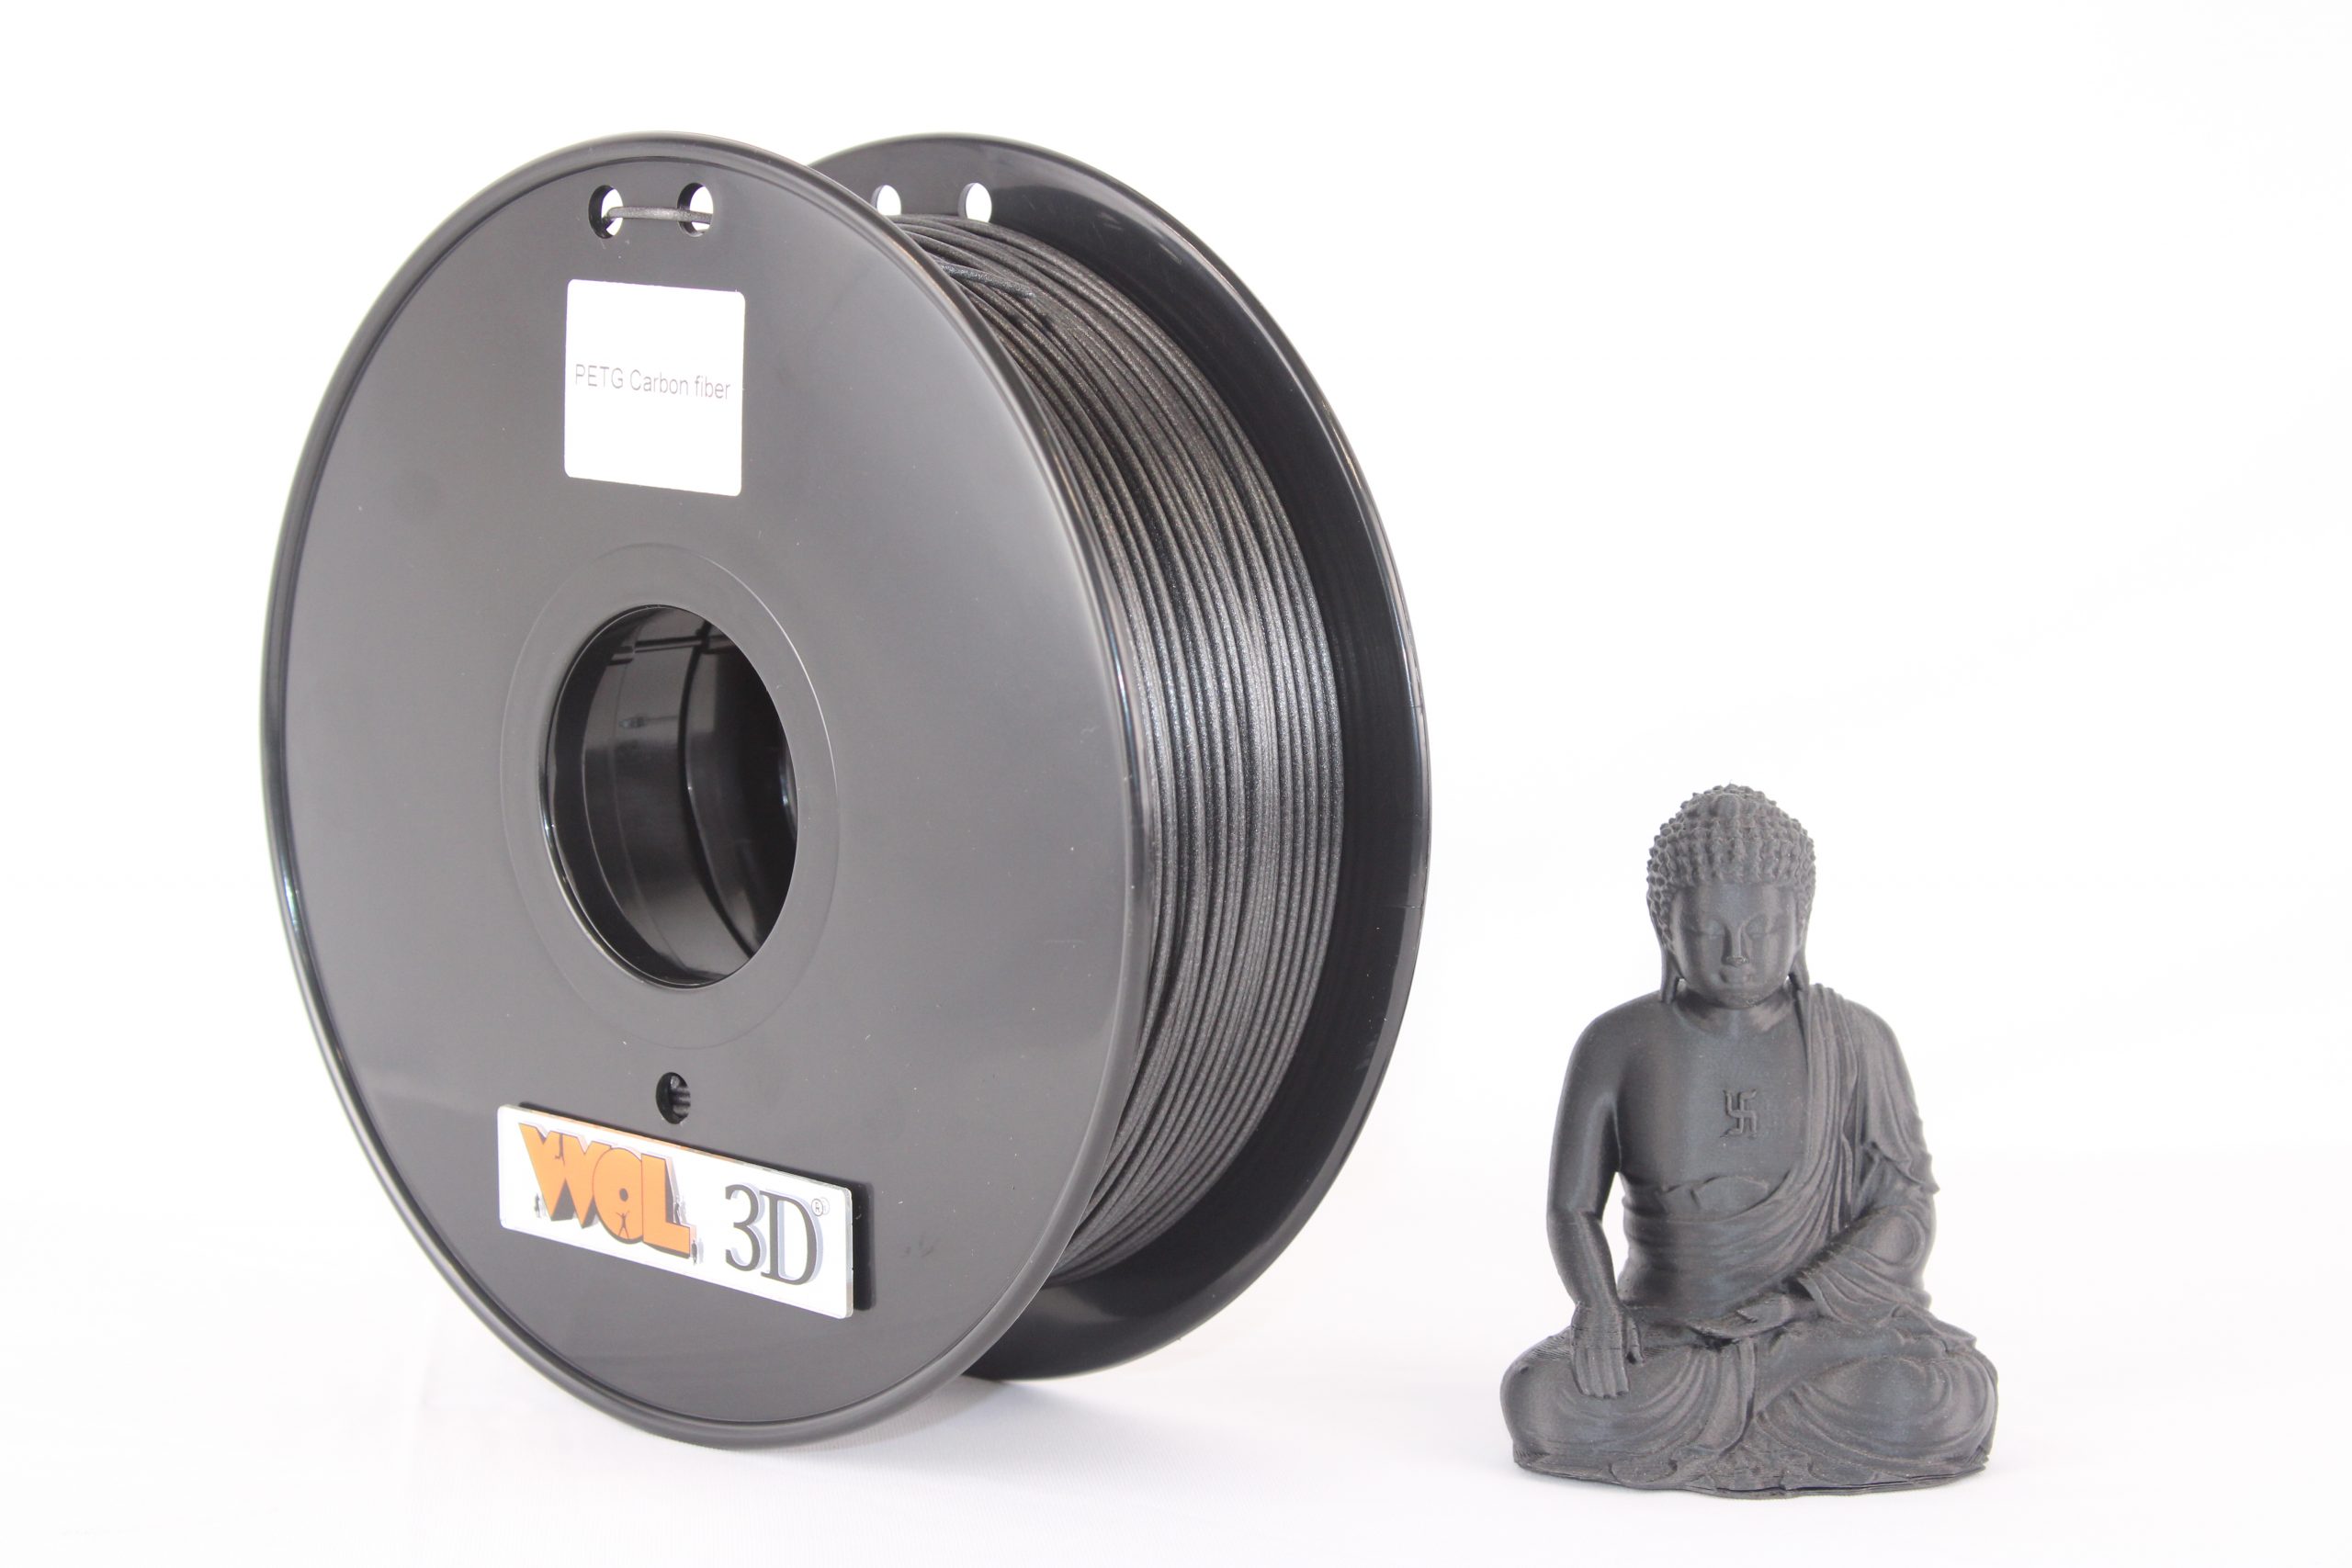 PLA ABS PETG Nylon Carbon Fiber 3D Printer Filament 1.75mm